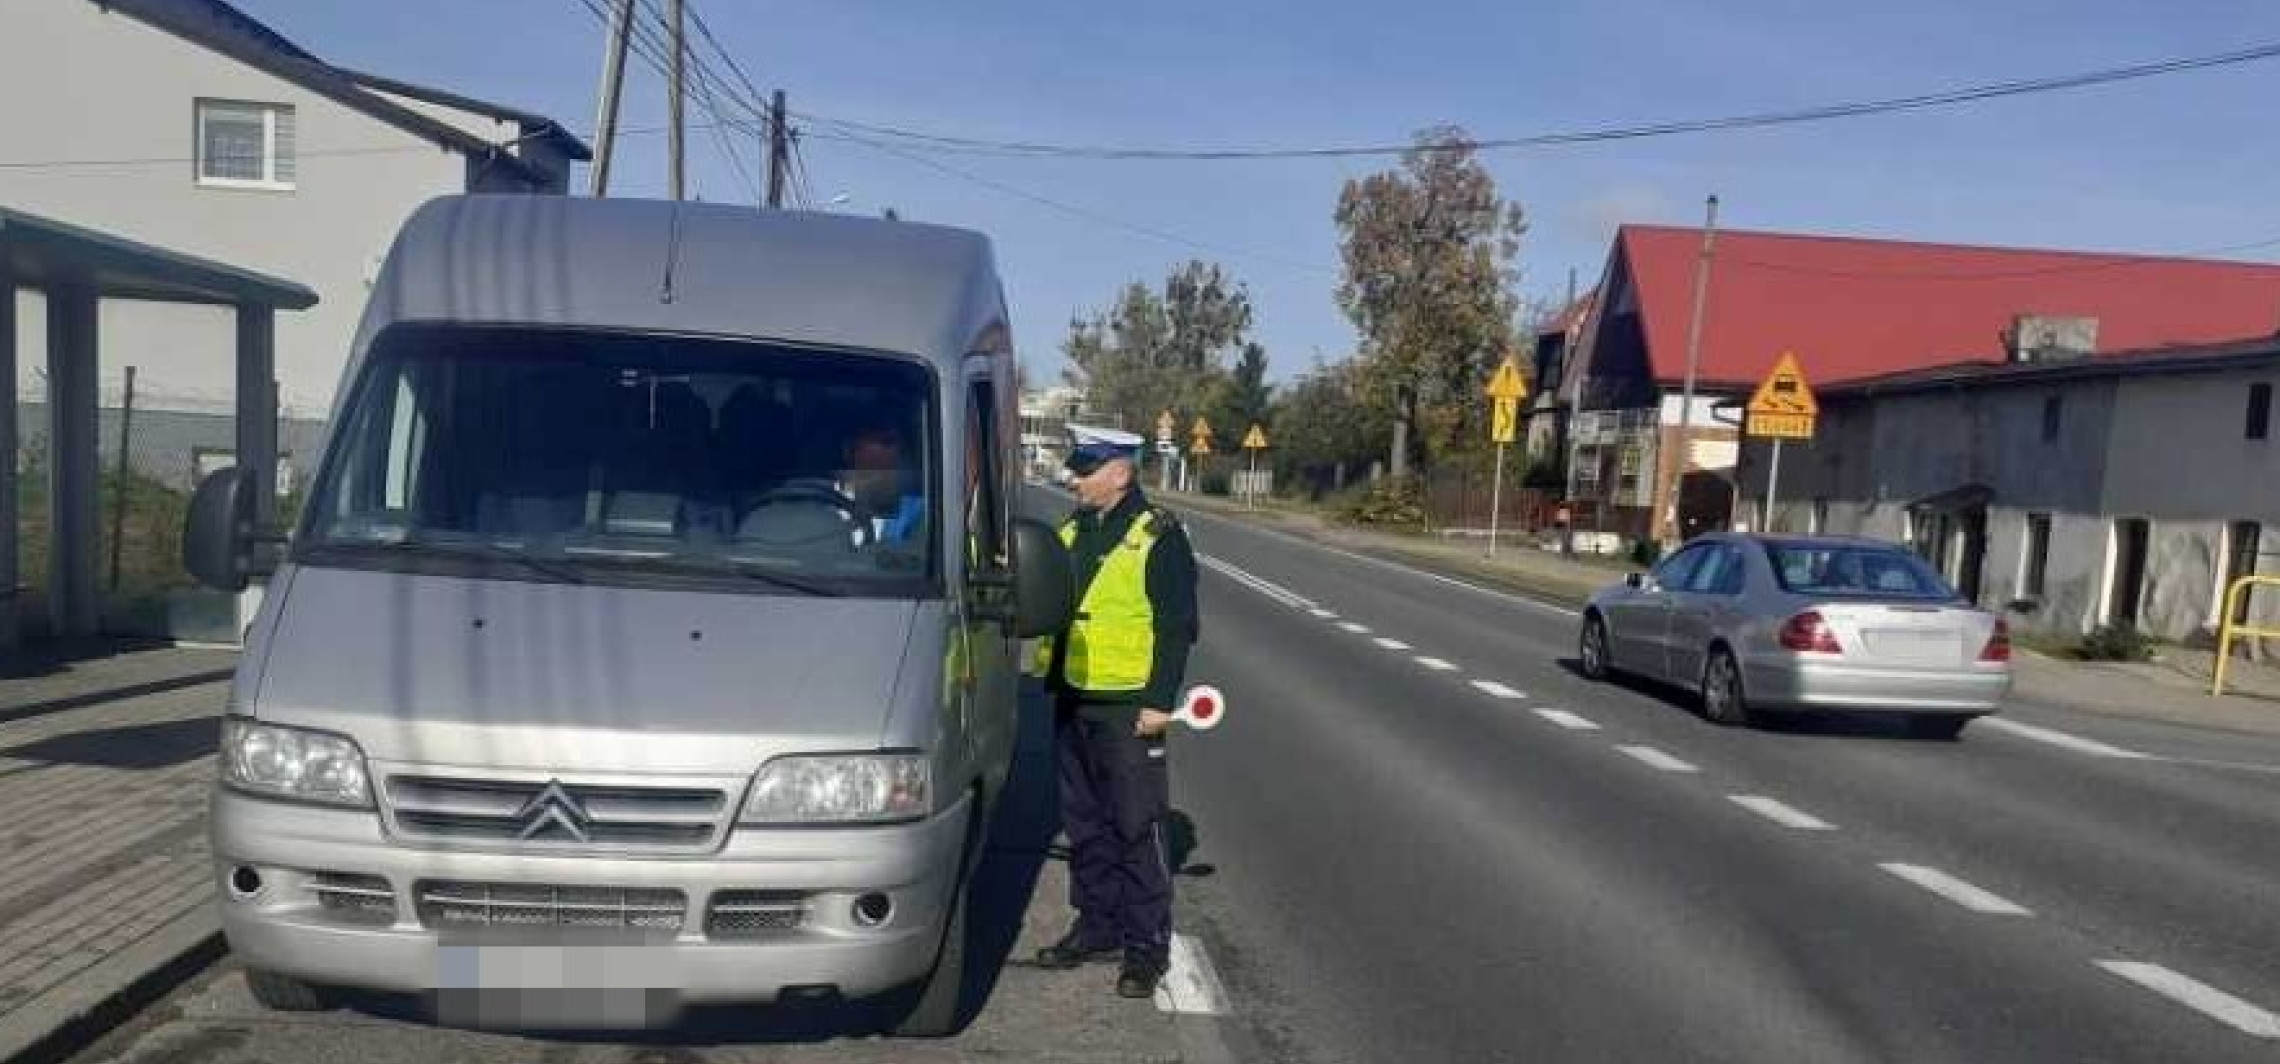 Inowrocław - Drogówka przyjrzała się ciężarówkom i autobusom